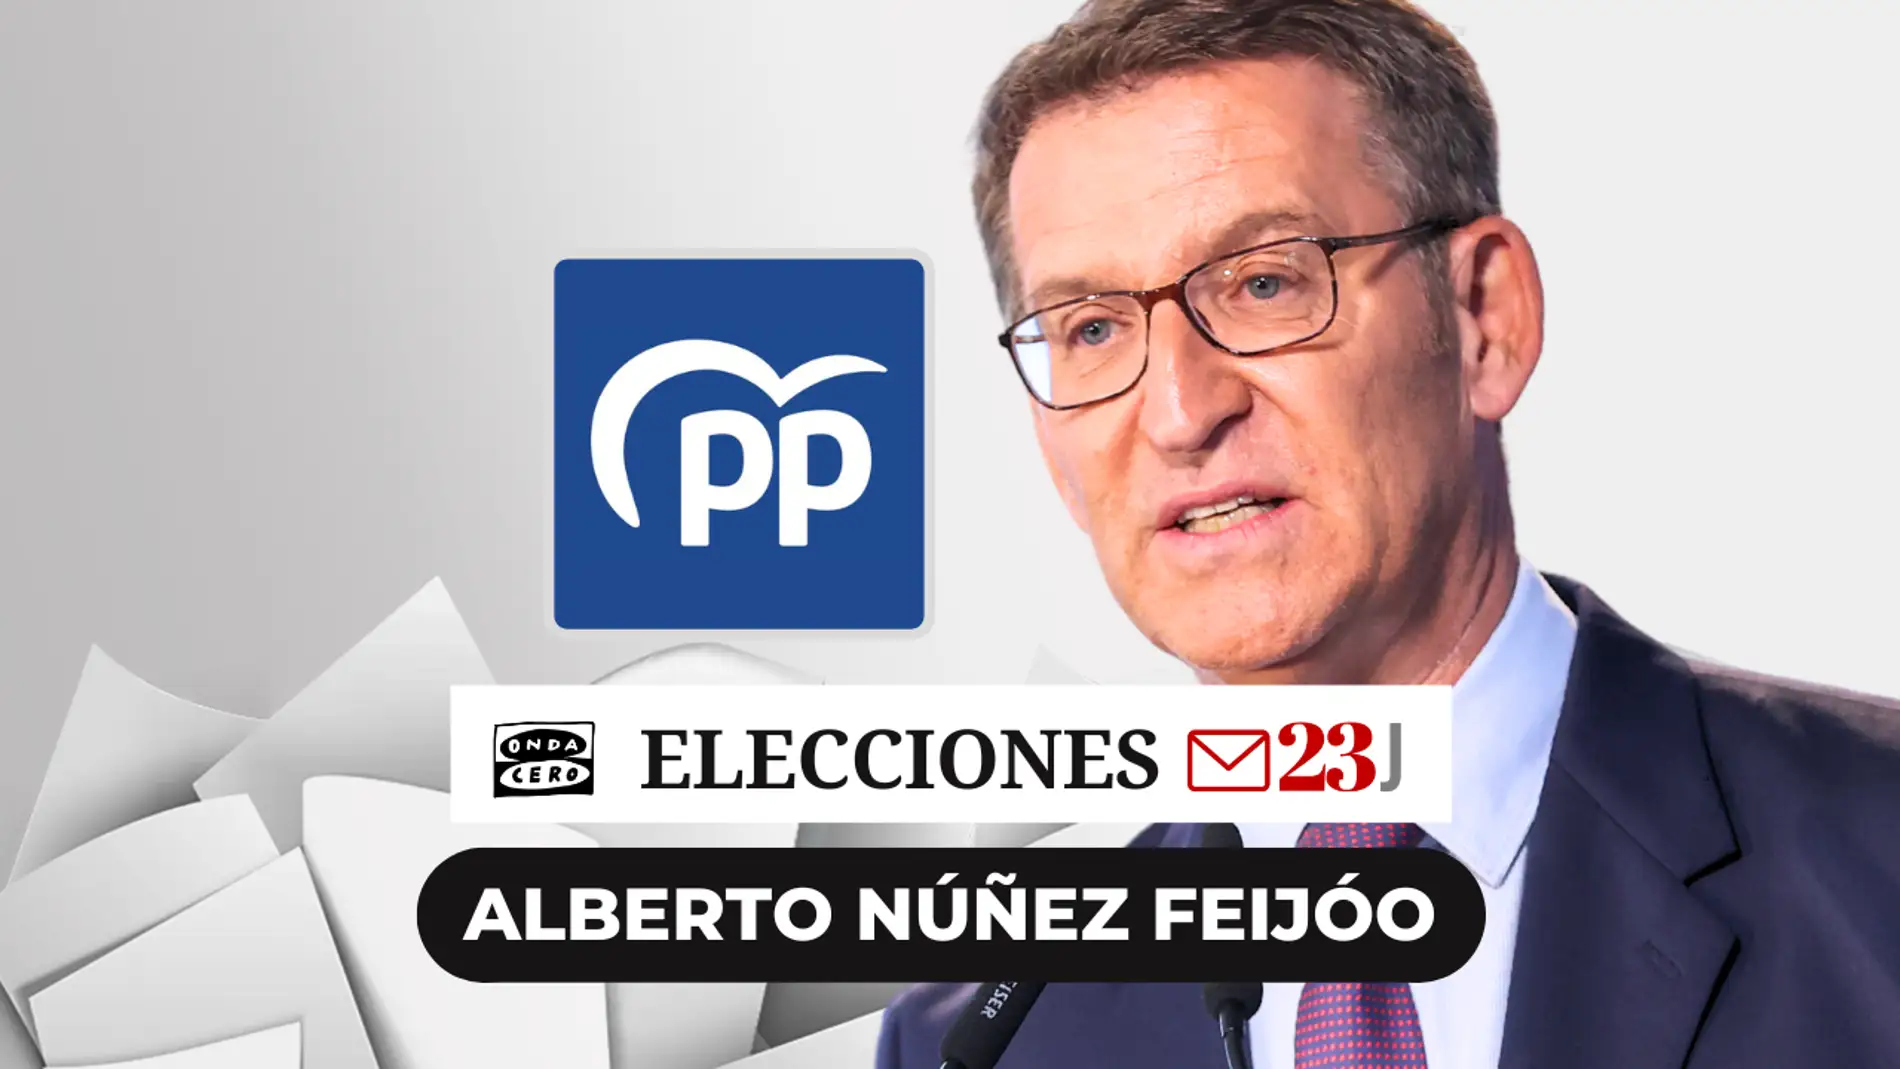 El perfil de Alberto Núñez Feijóo: el candidato de las cuatro mayorías absolutas favorito en las encuestas 